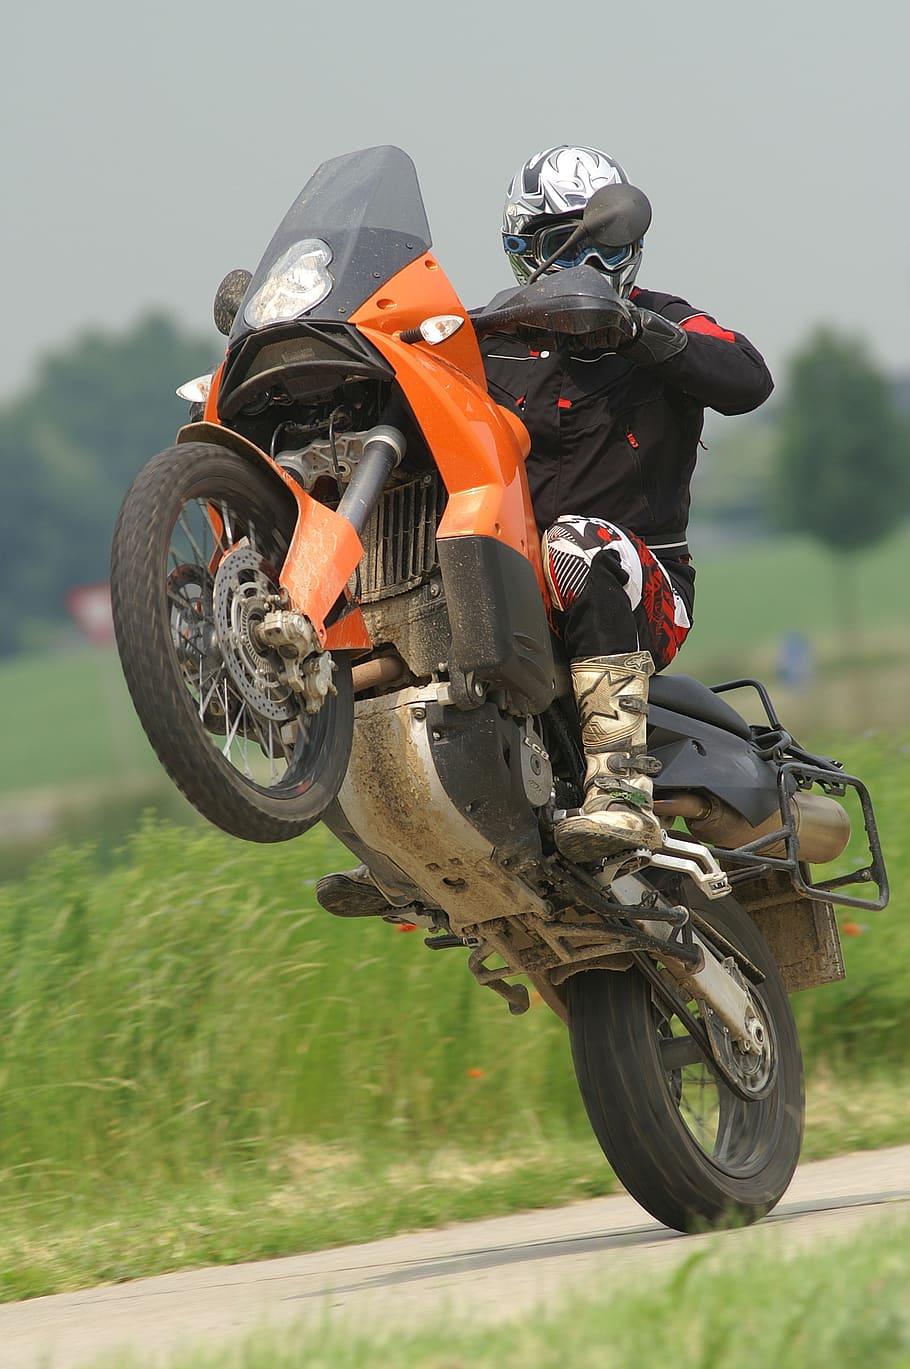 wheelie, motorbike motorcycle, hurry, helmet, motorsport, transport